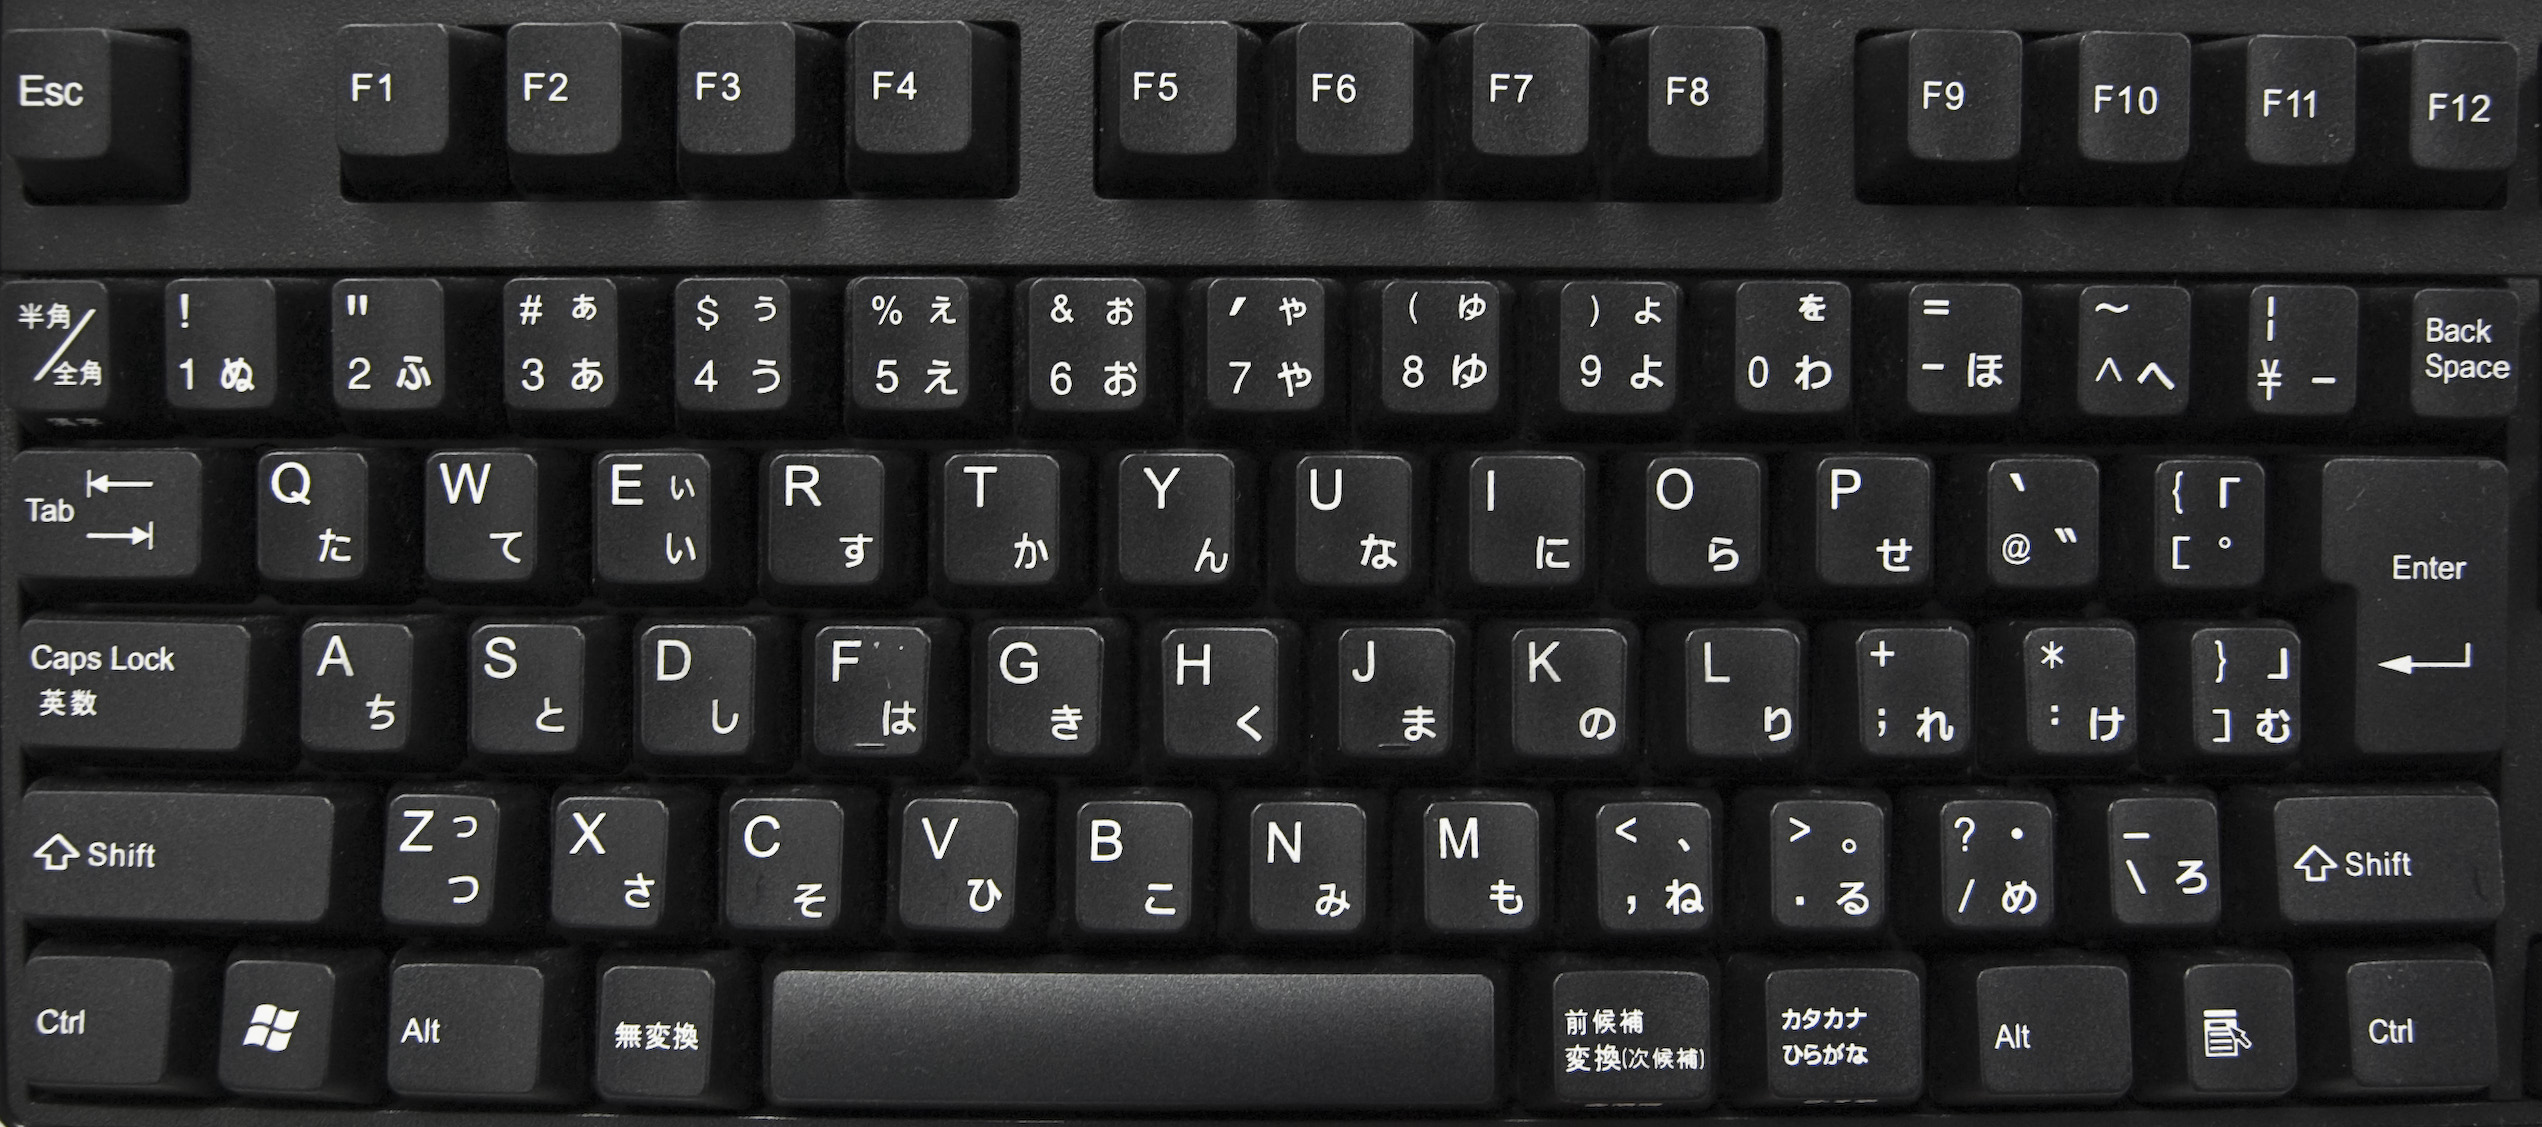 at tiltrække Specificitet skylle File:Japanische Tastatur 1.jpg - Wikimedia Commons